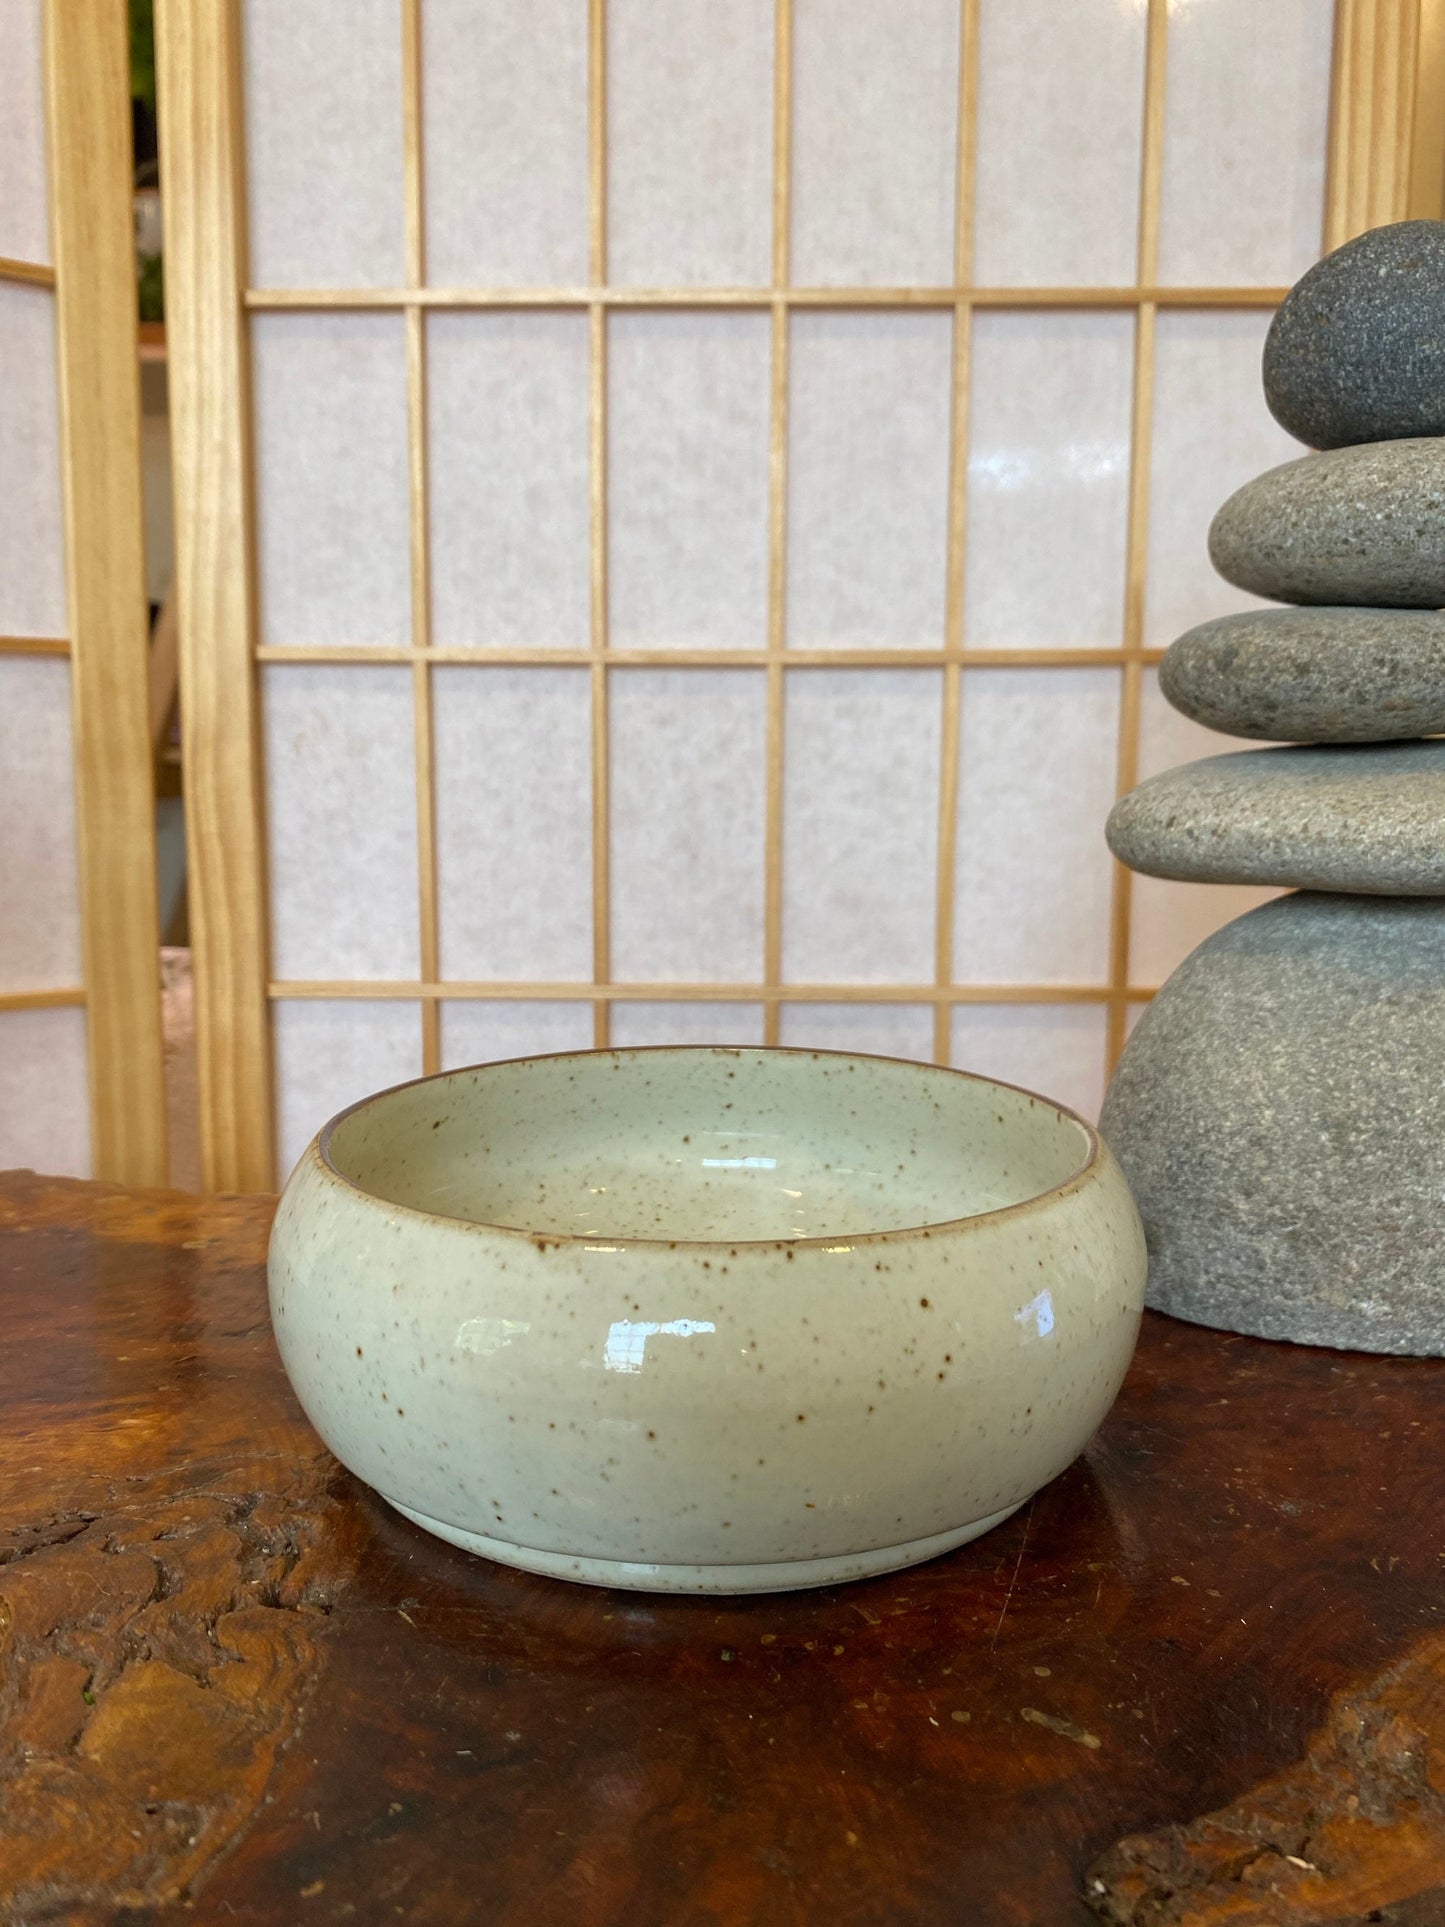 Flower sometsuke 染付, Japanese Ceramic deep Bowl, good for Medium Kokedama.  Size: 6" diameter, 2.5 inch height.